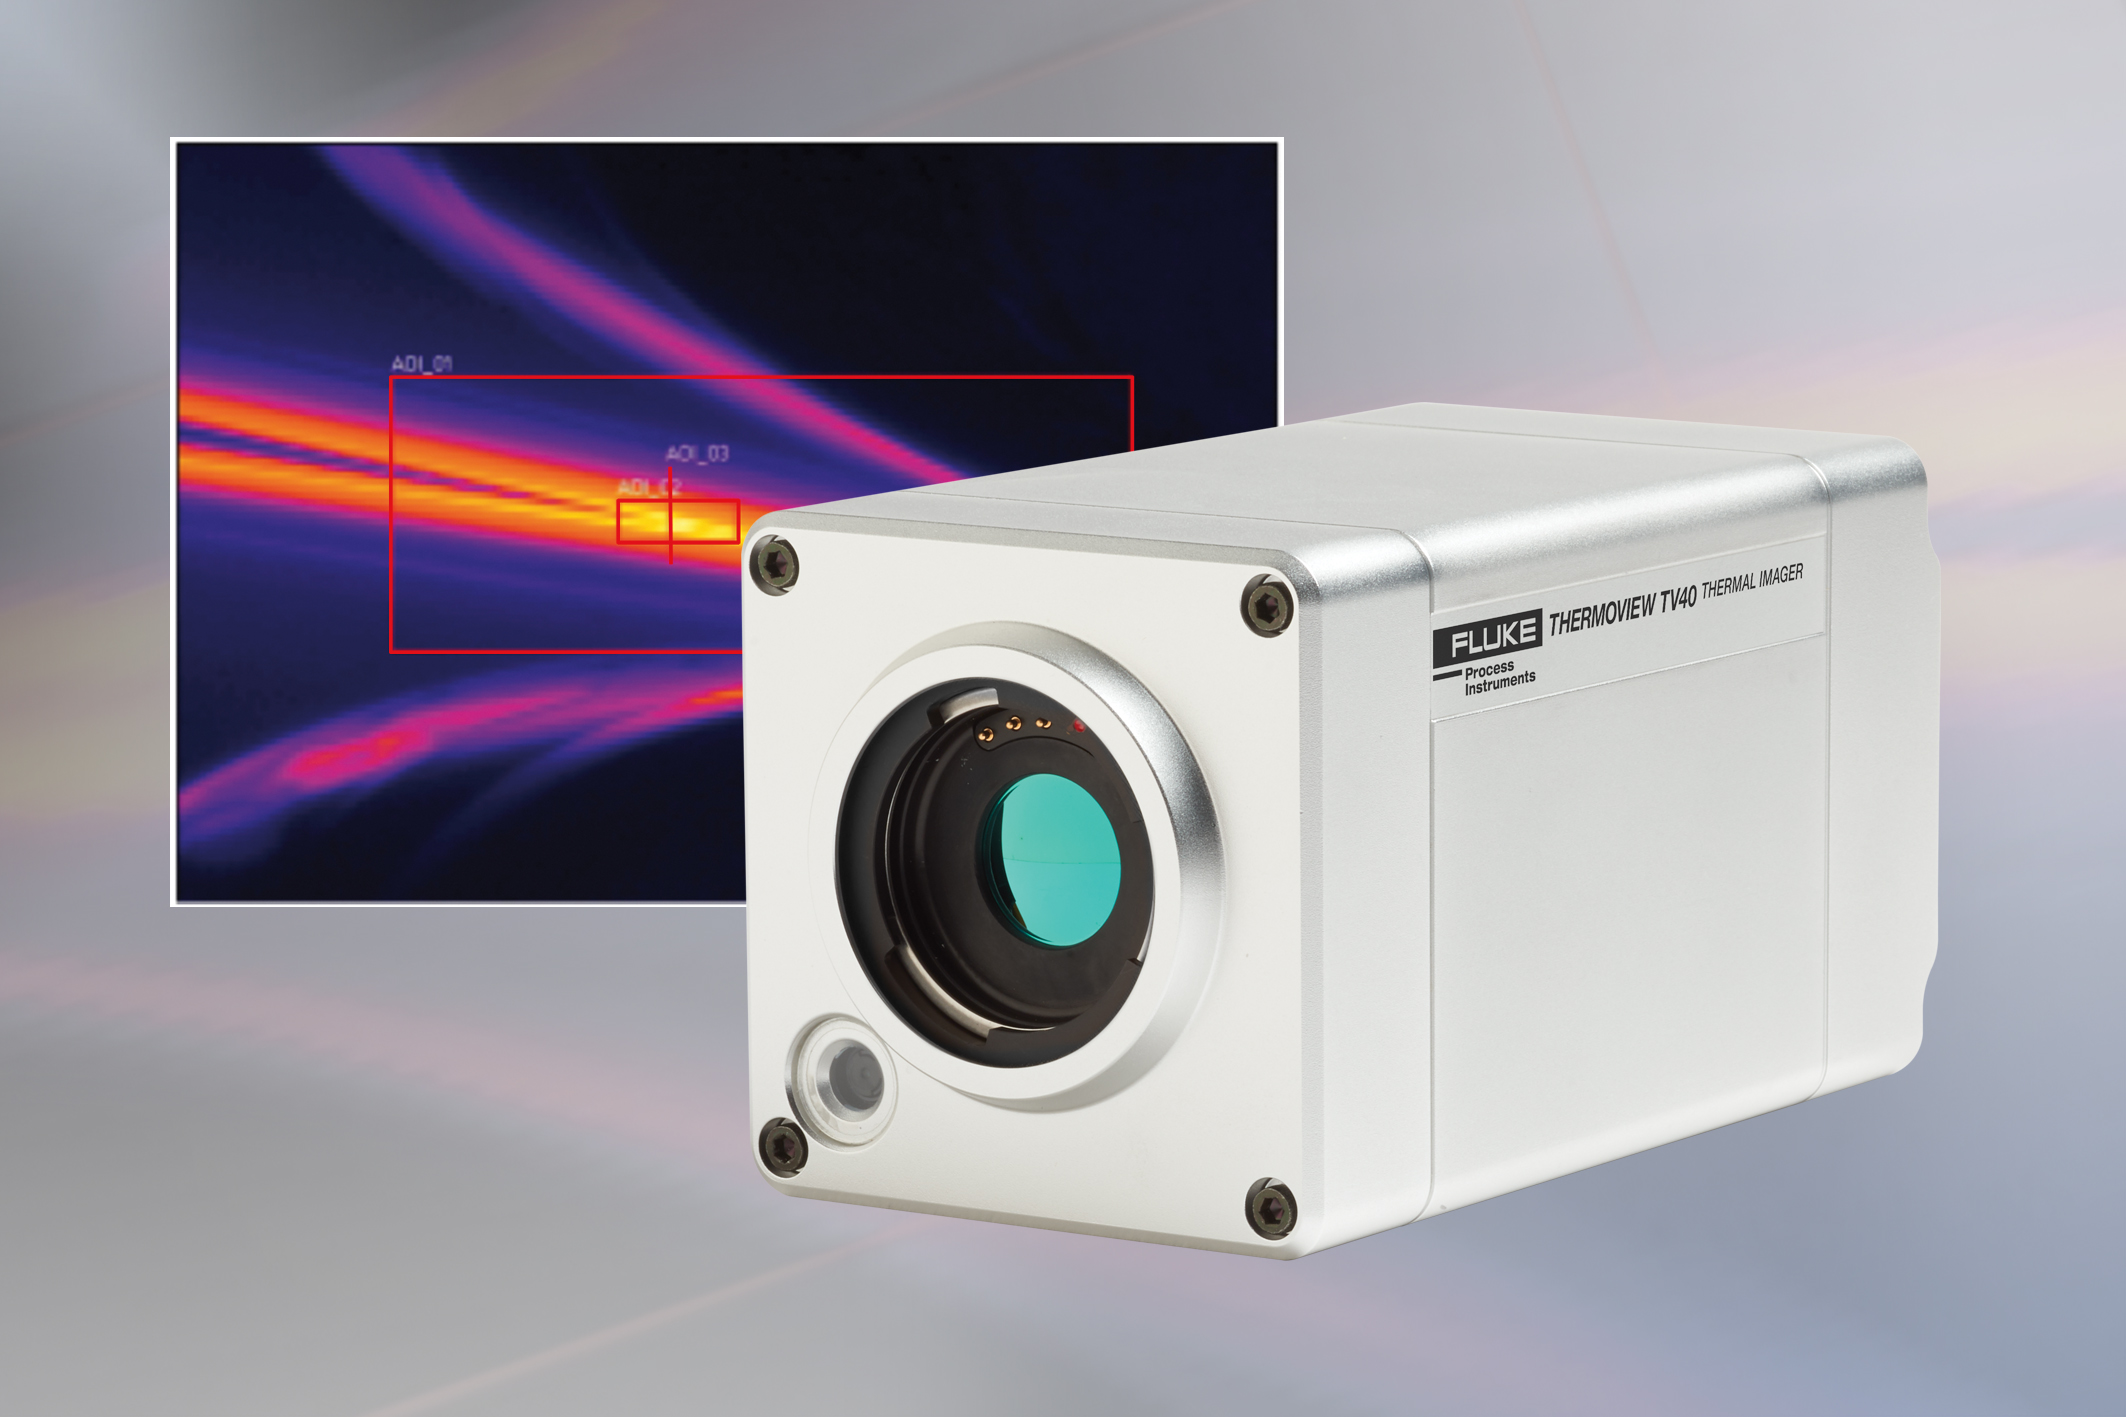 Nuevas cámaras termográficas Fluke: calidad y control industrial en remoto